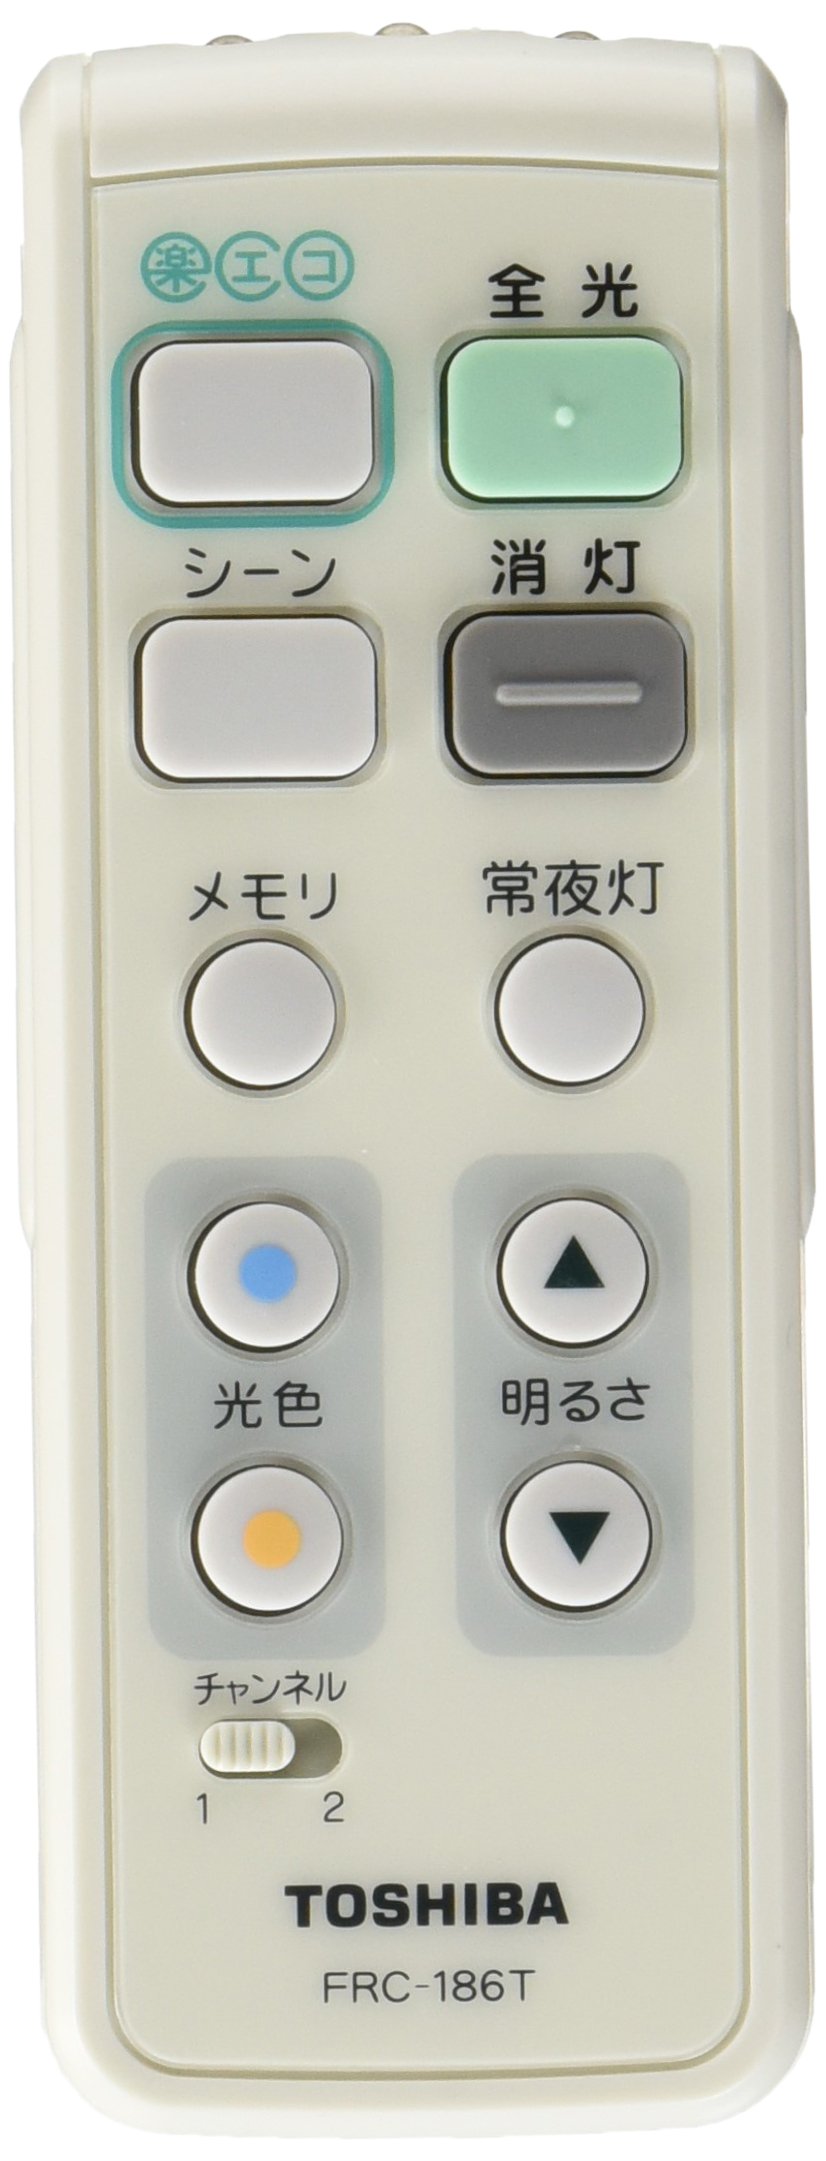 東芝(TOSHIBA) LEDシーリングライトリモコン部品 あとからリモコン ダイレクト選択タイプ FRC-186T